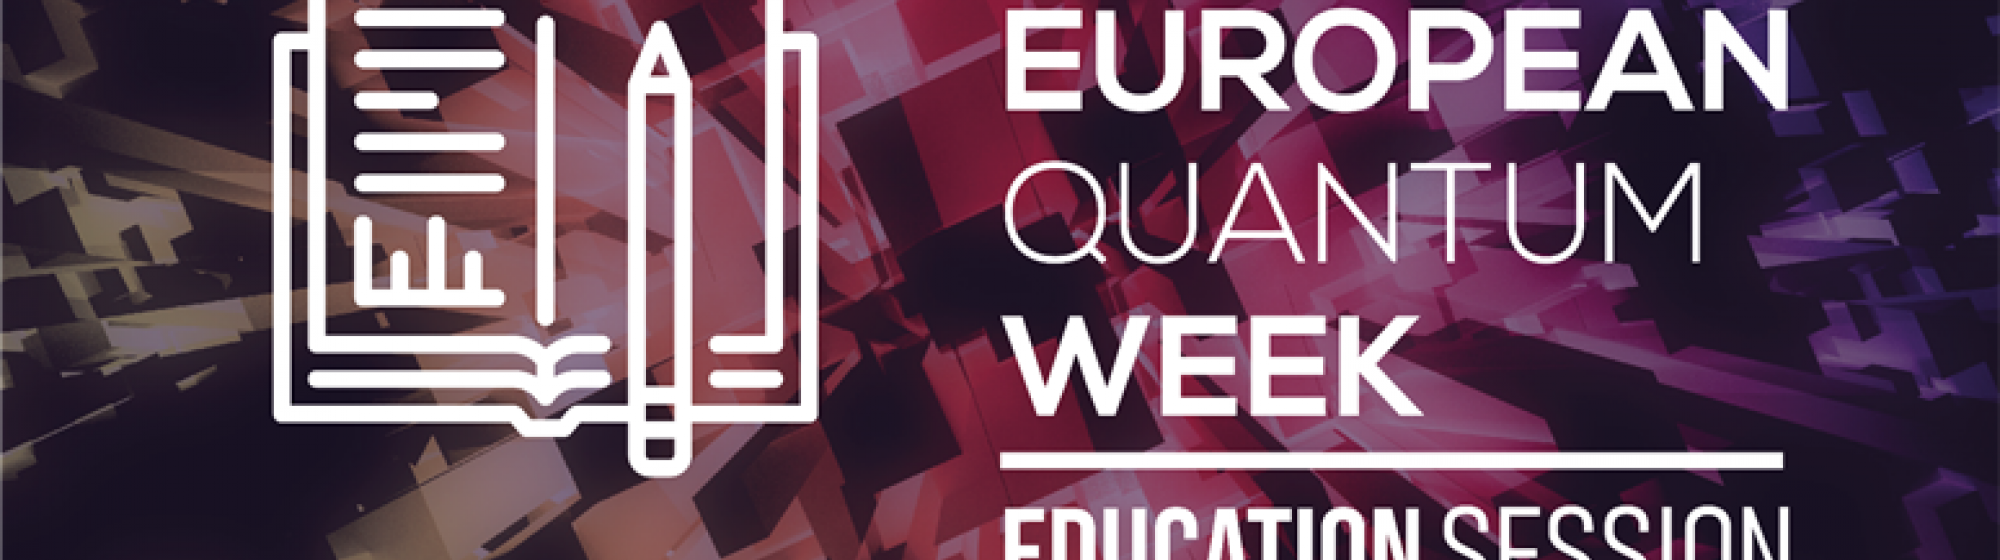 European Quantum Week Advert